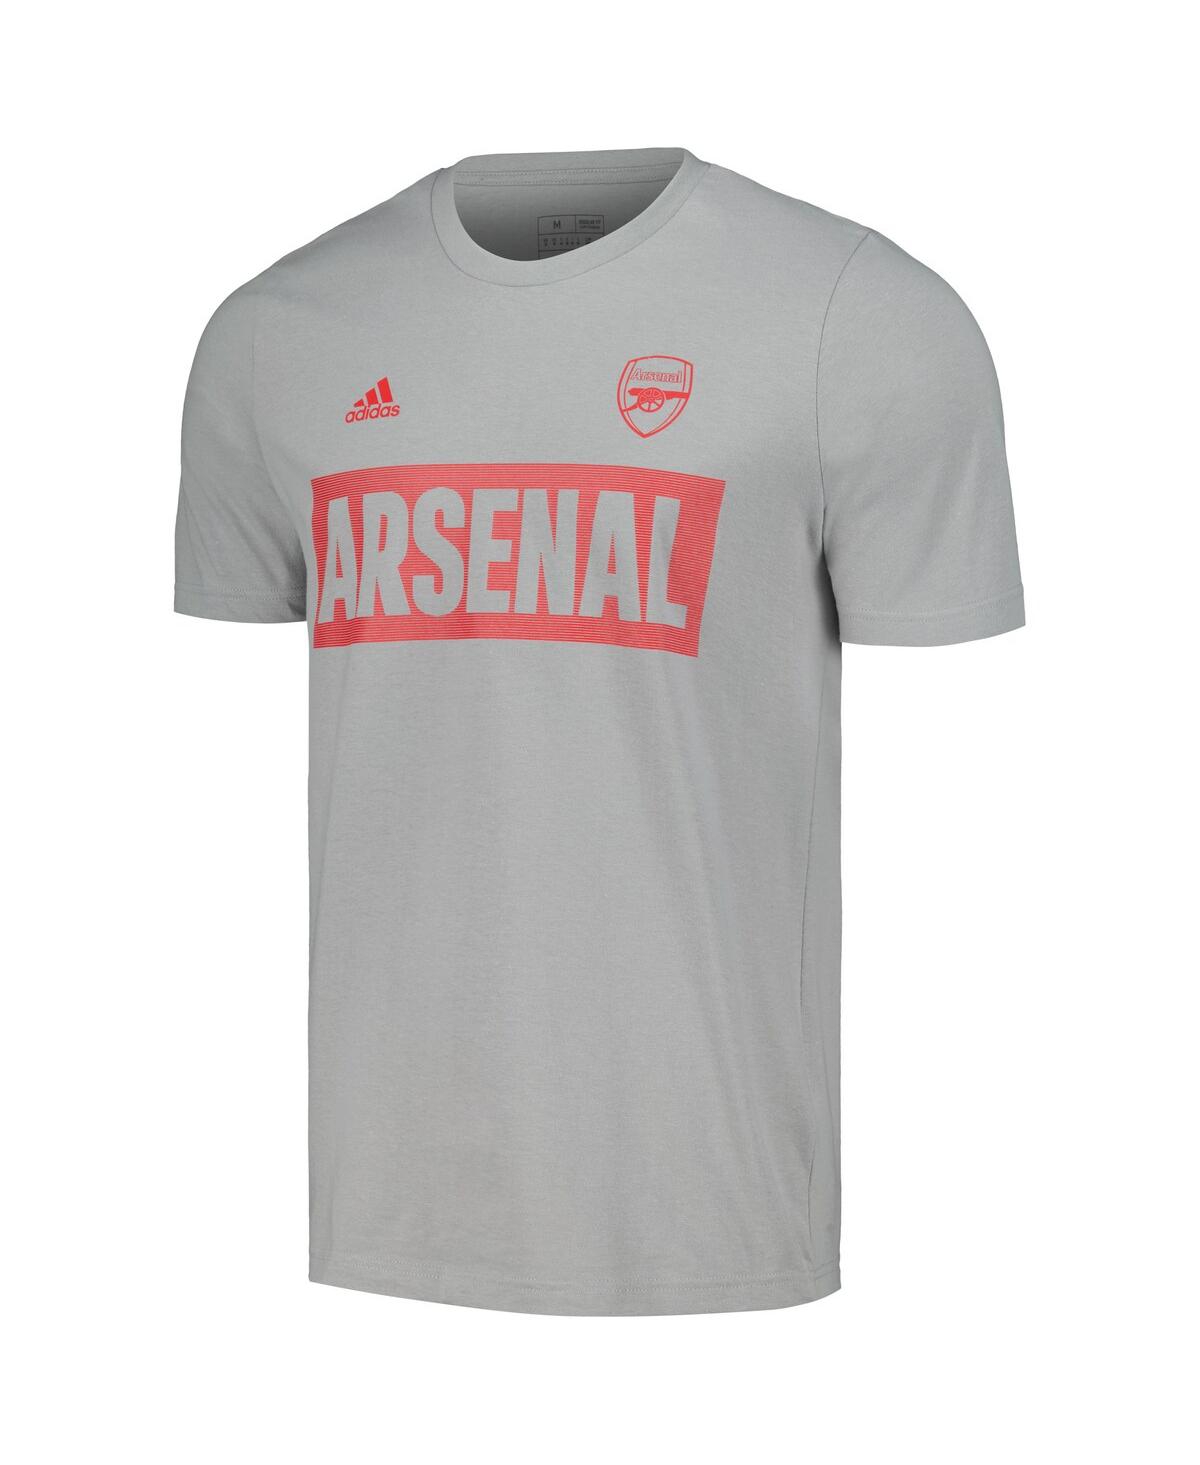 Shop Adidas Originals Men's Adidas Gray Arsenal Culture Bar T-shirt